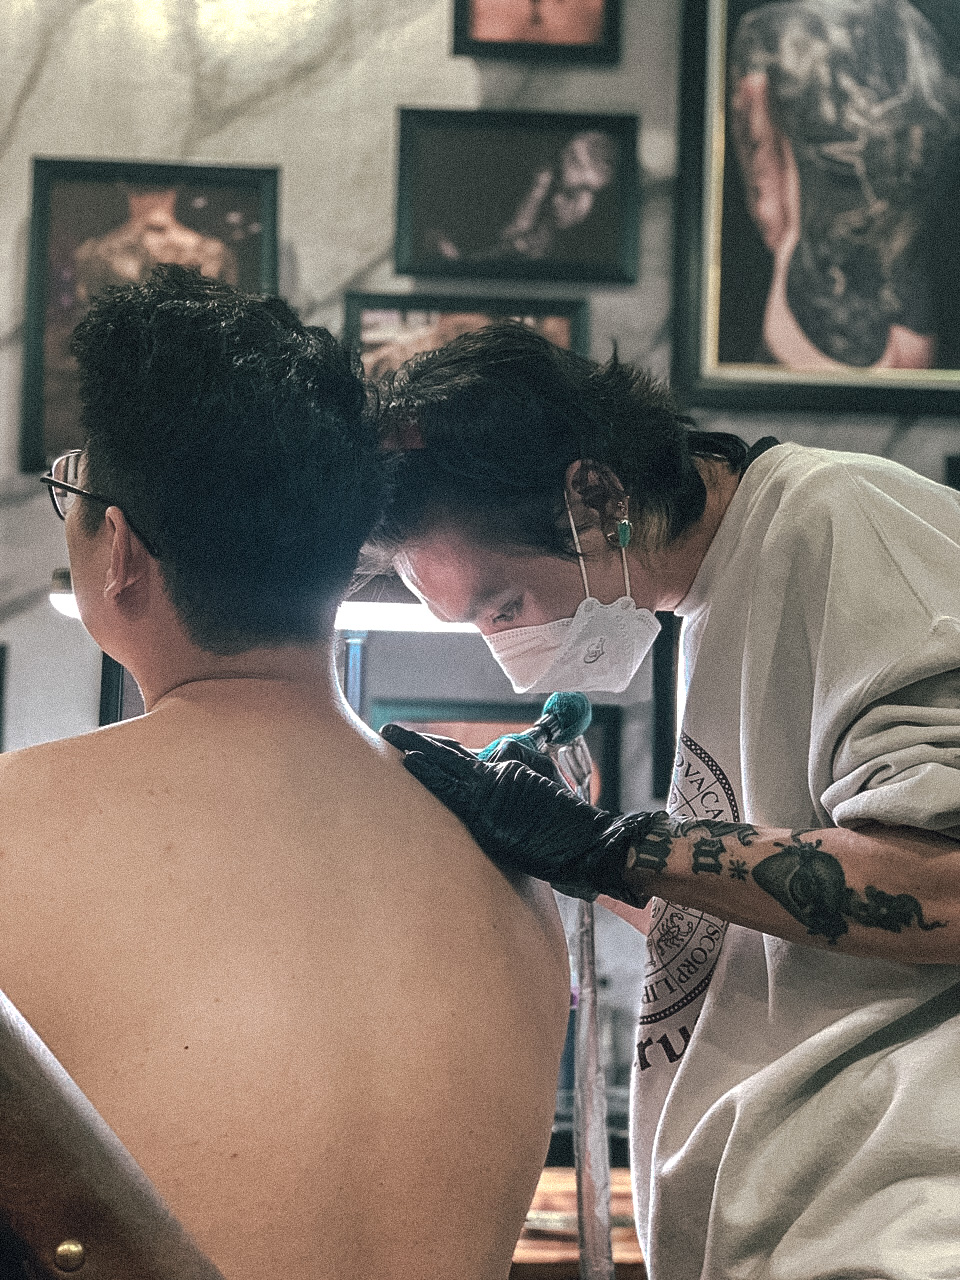 ᐅ Thế Giới Tattoo - Xăm Hình Nghệ Thuật Hồ Chí Minh | Review đánh giá